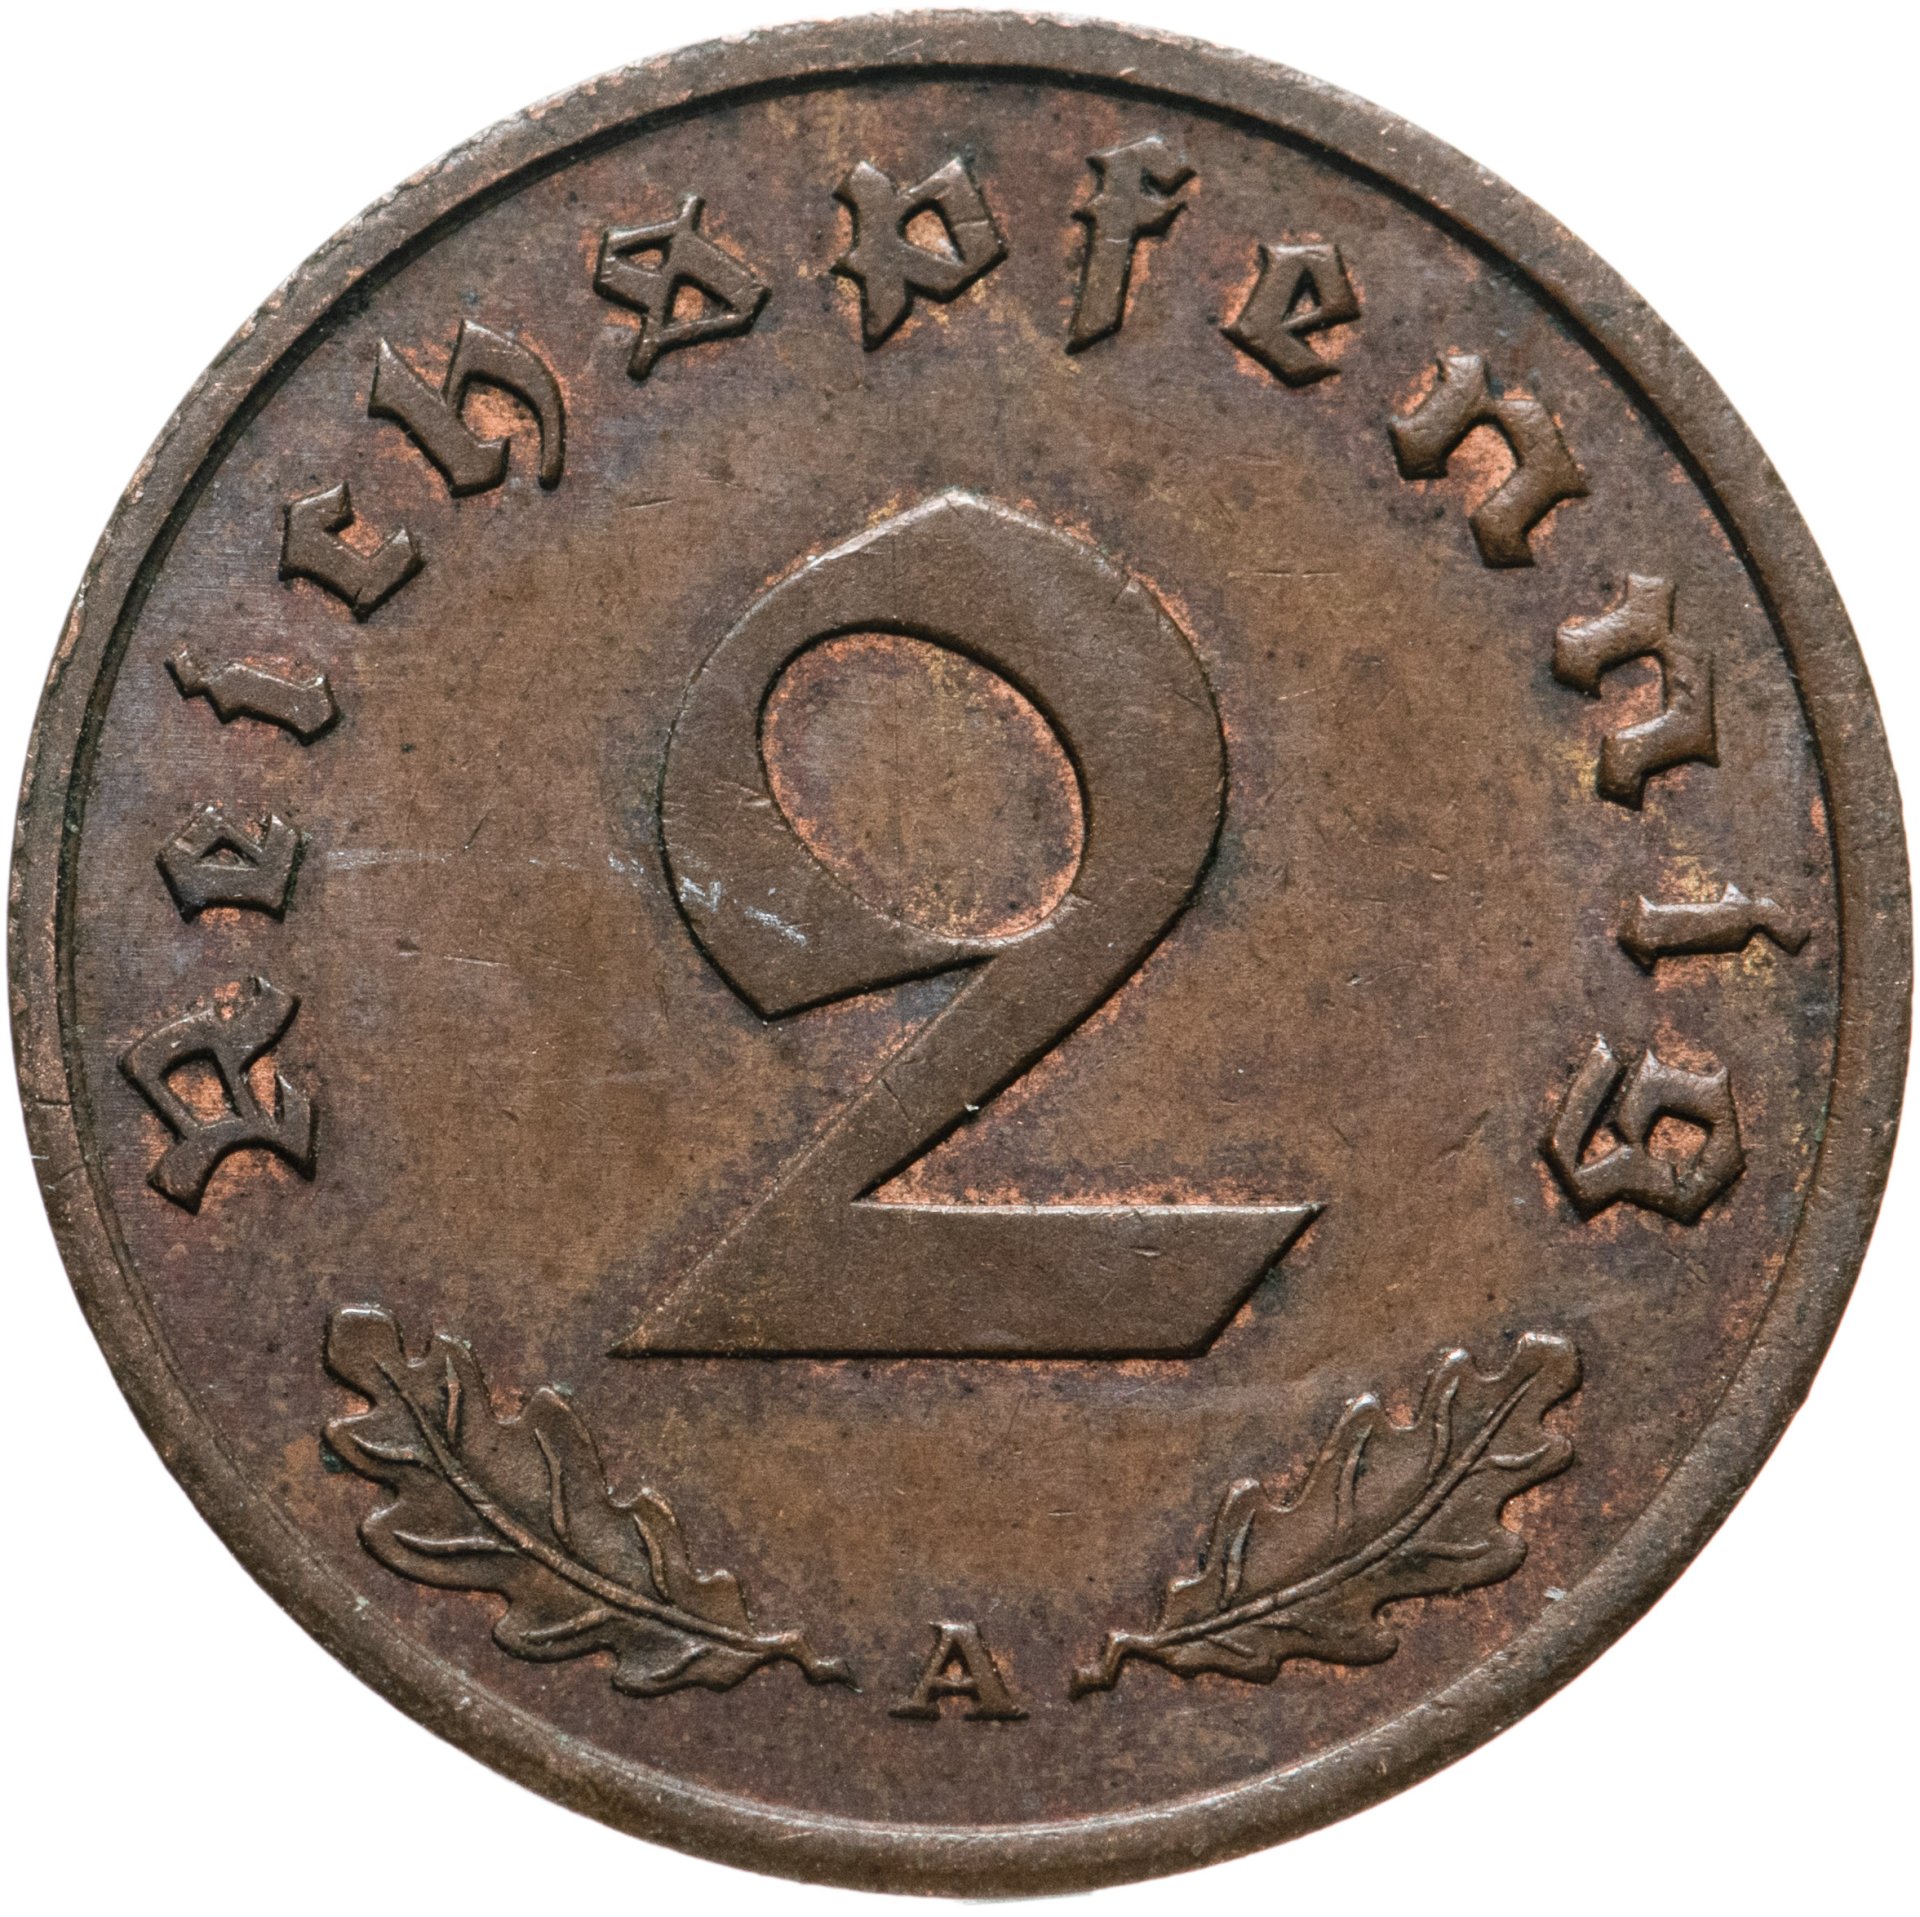 Монета 1939 года. Немецкая монета 1939. Монеты третьего рейха. Нумизмат монета с эмблемой третьего рейха. Монета Германия 1 рейхспфенниг 1944.